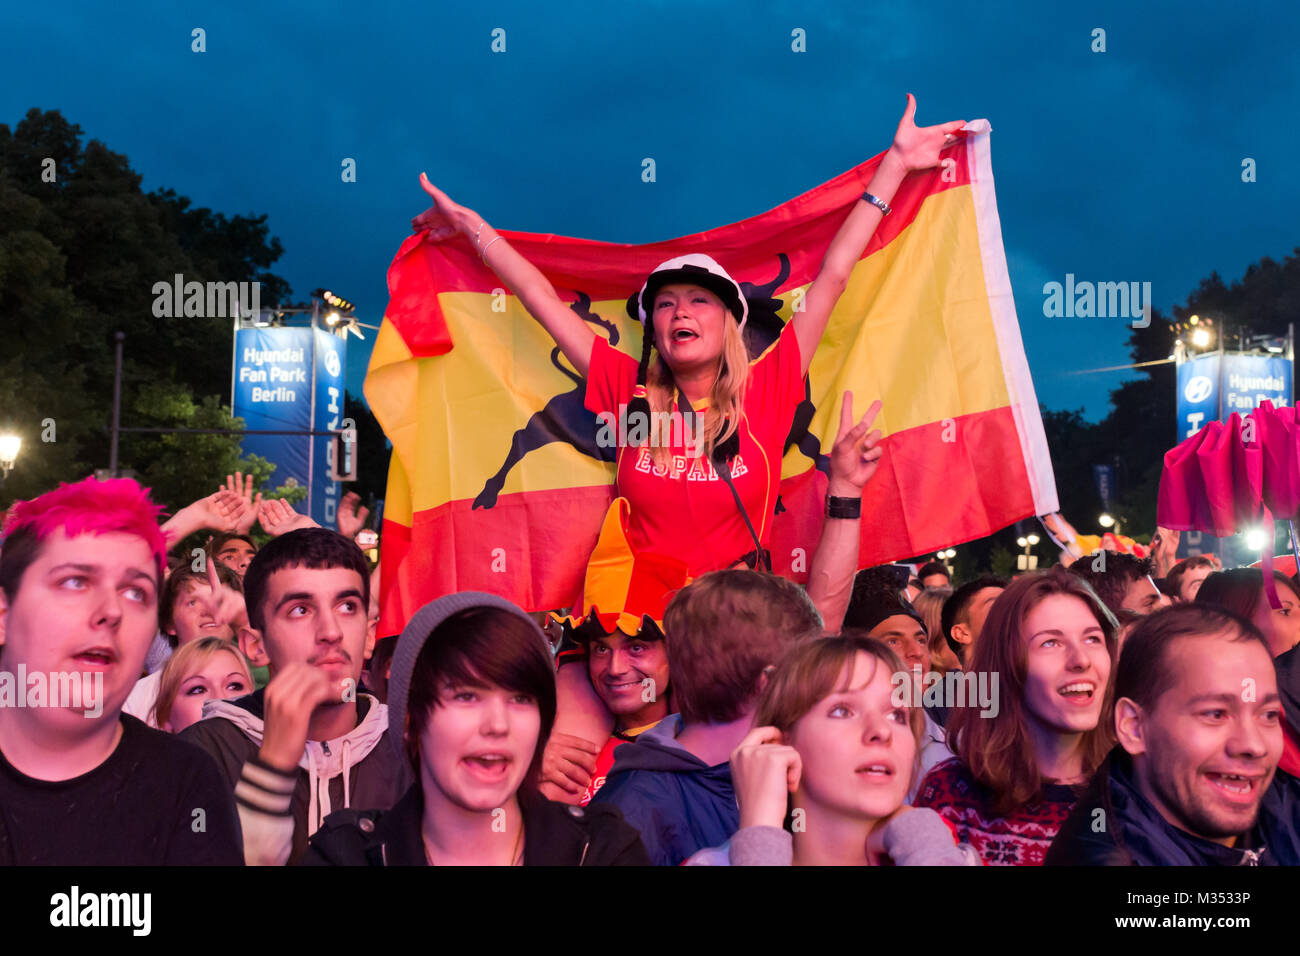 Laut jubelnde Fußballfans beim Sieg von Spanien gegen Italien an der Fanmeile zur Europameisterschaft 2012 am Brandenburger Tor in Berlin. Stock Photo